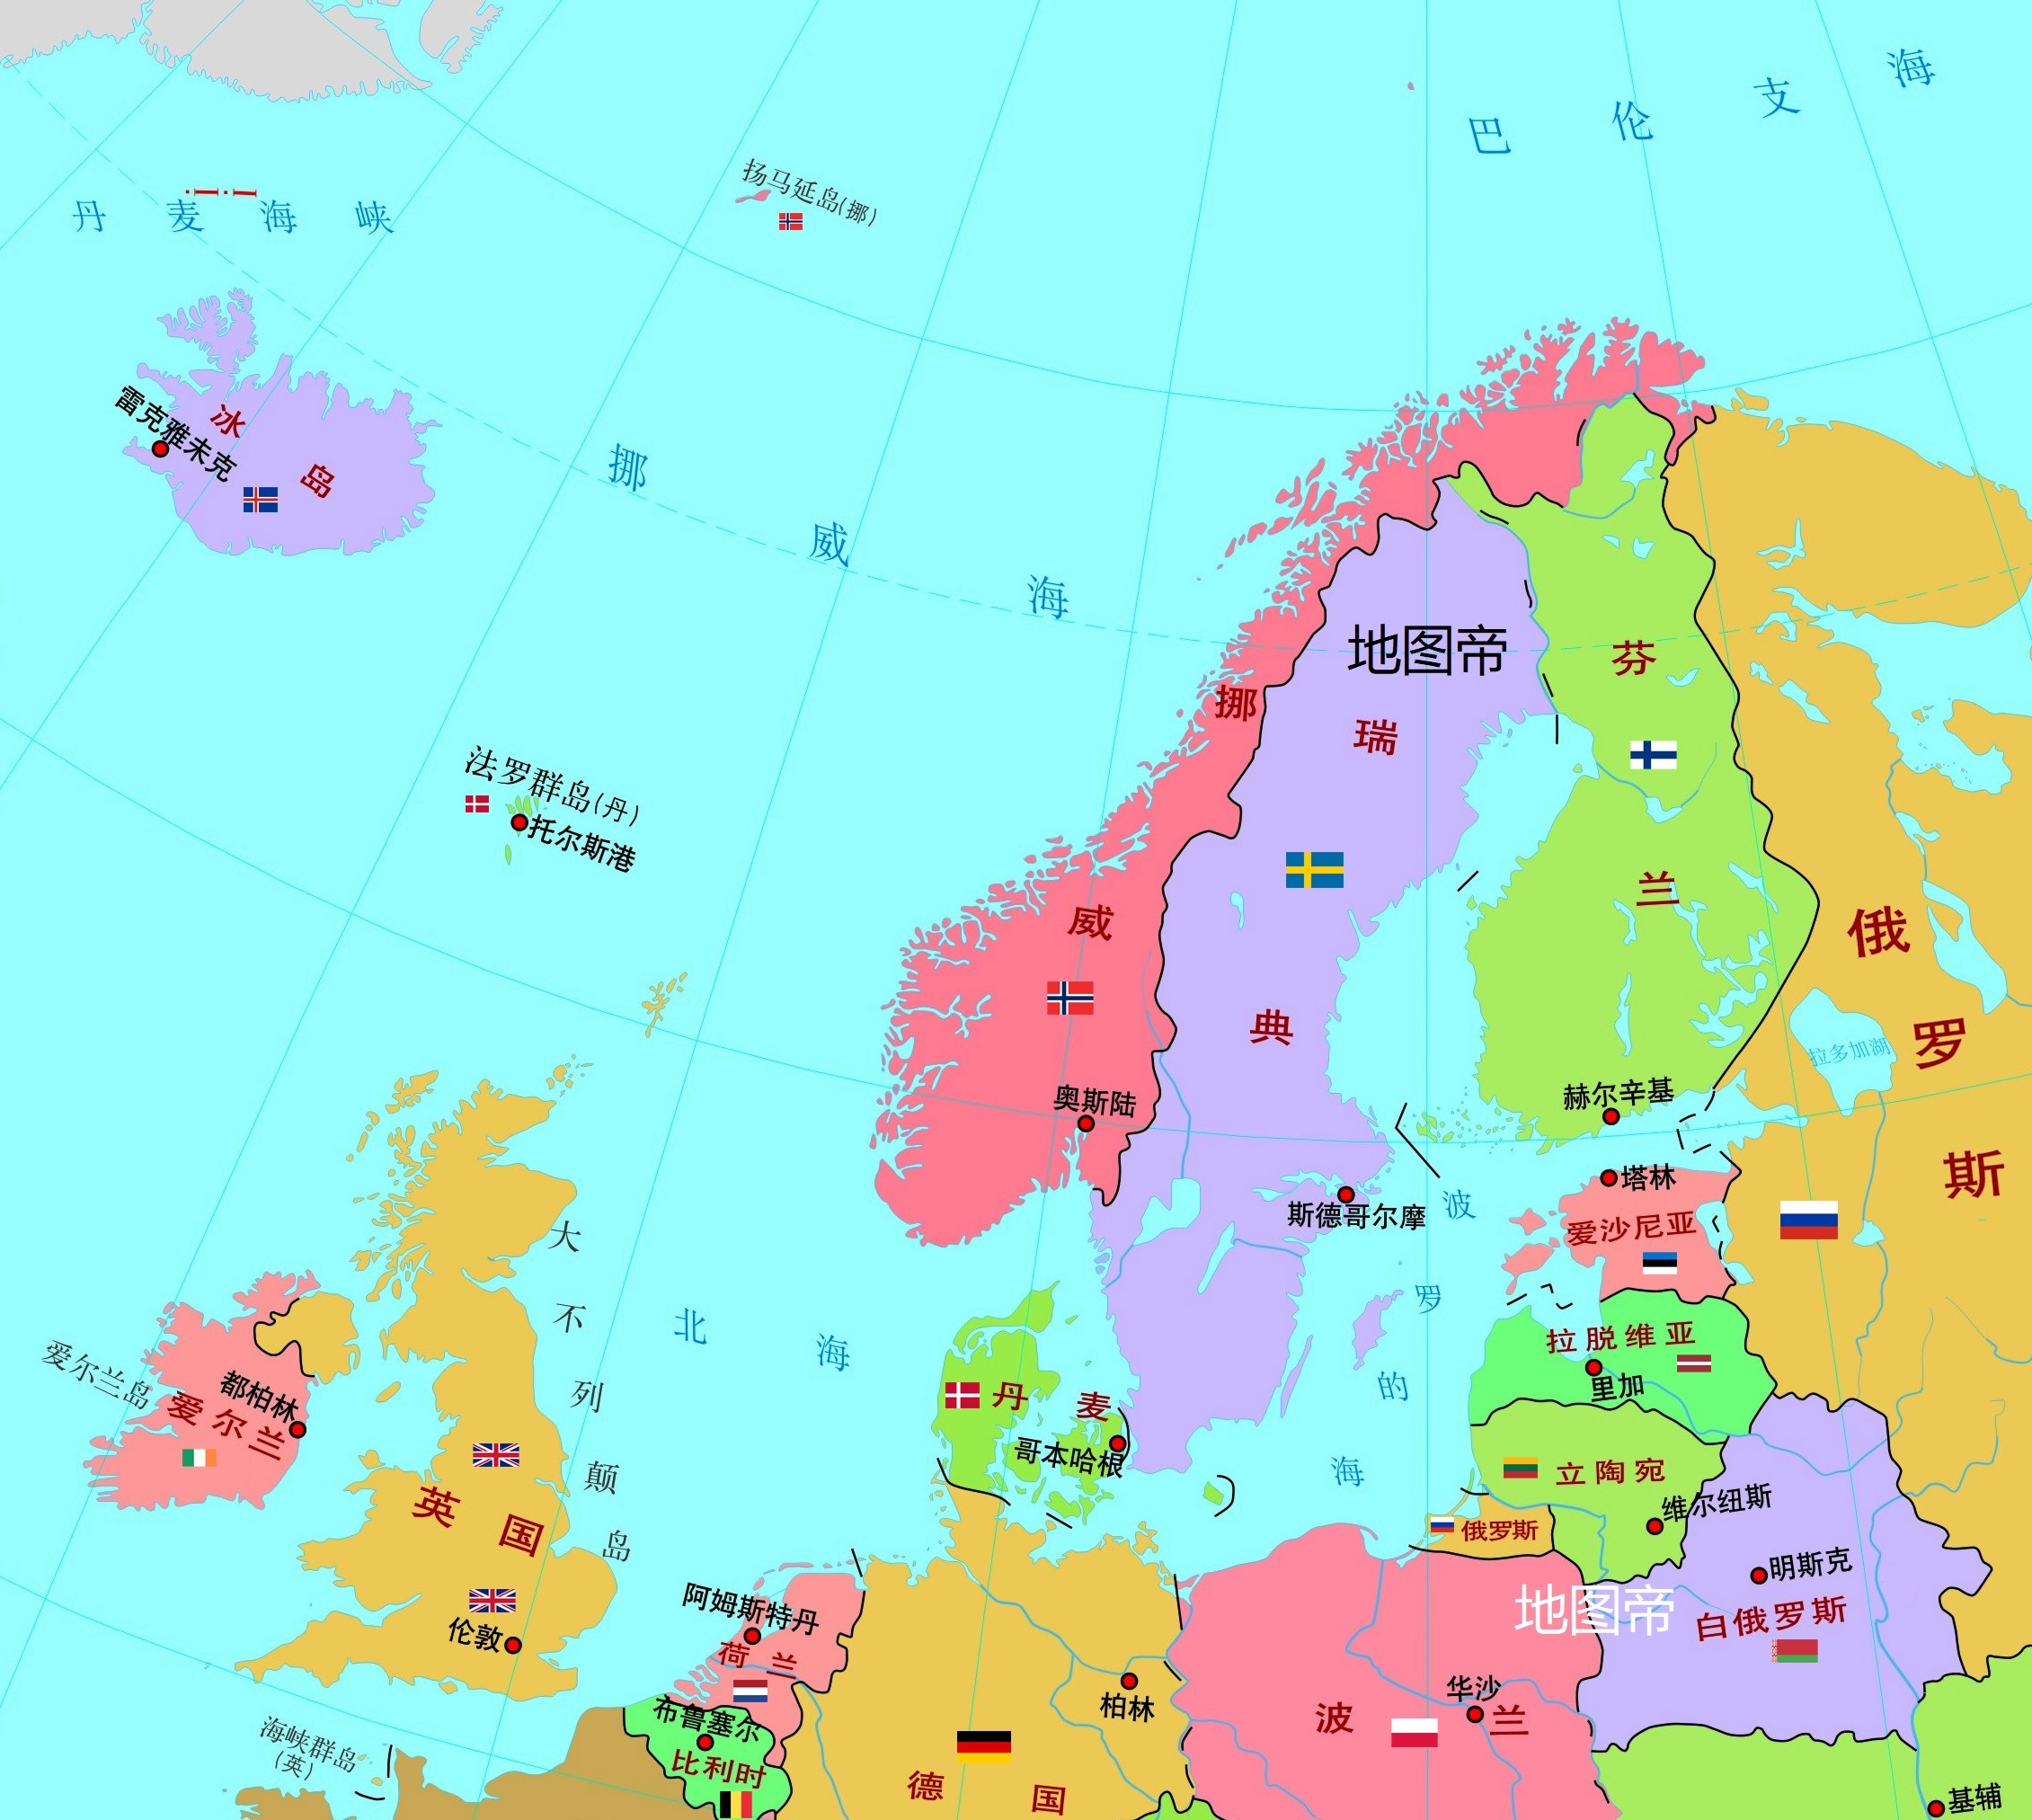 北欧面积最大的国家瑞典,为什么没有海外领地?